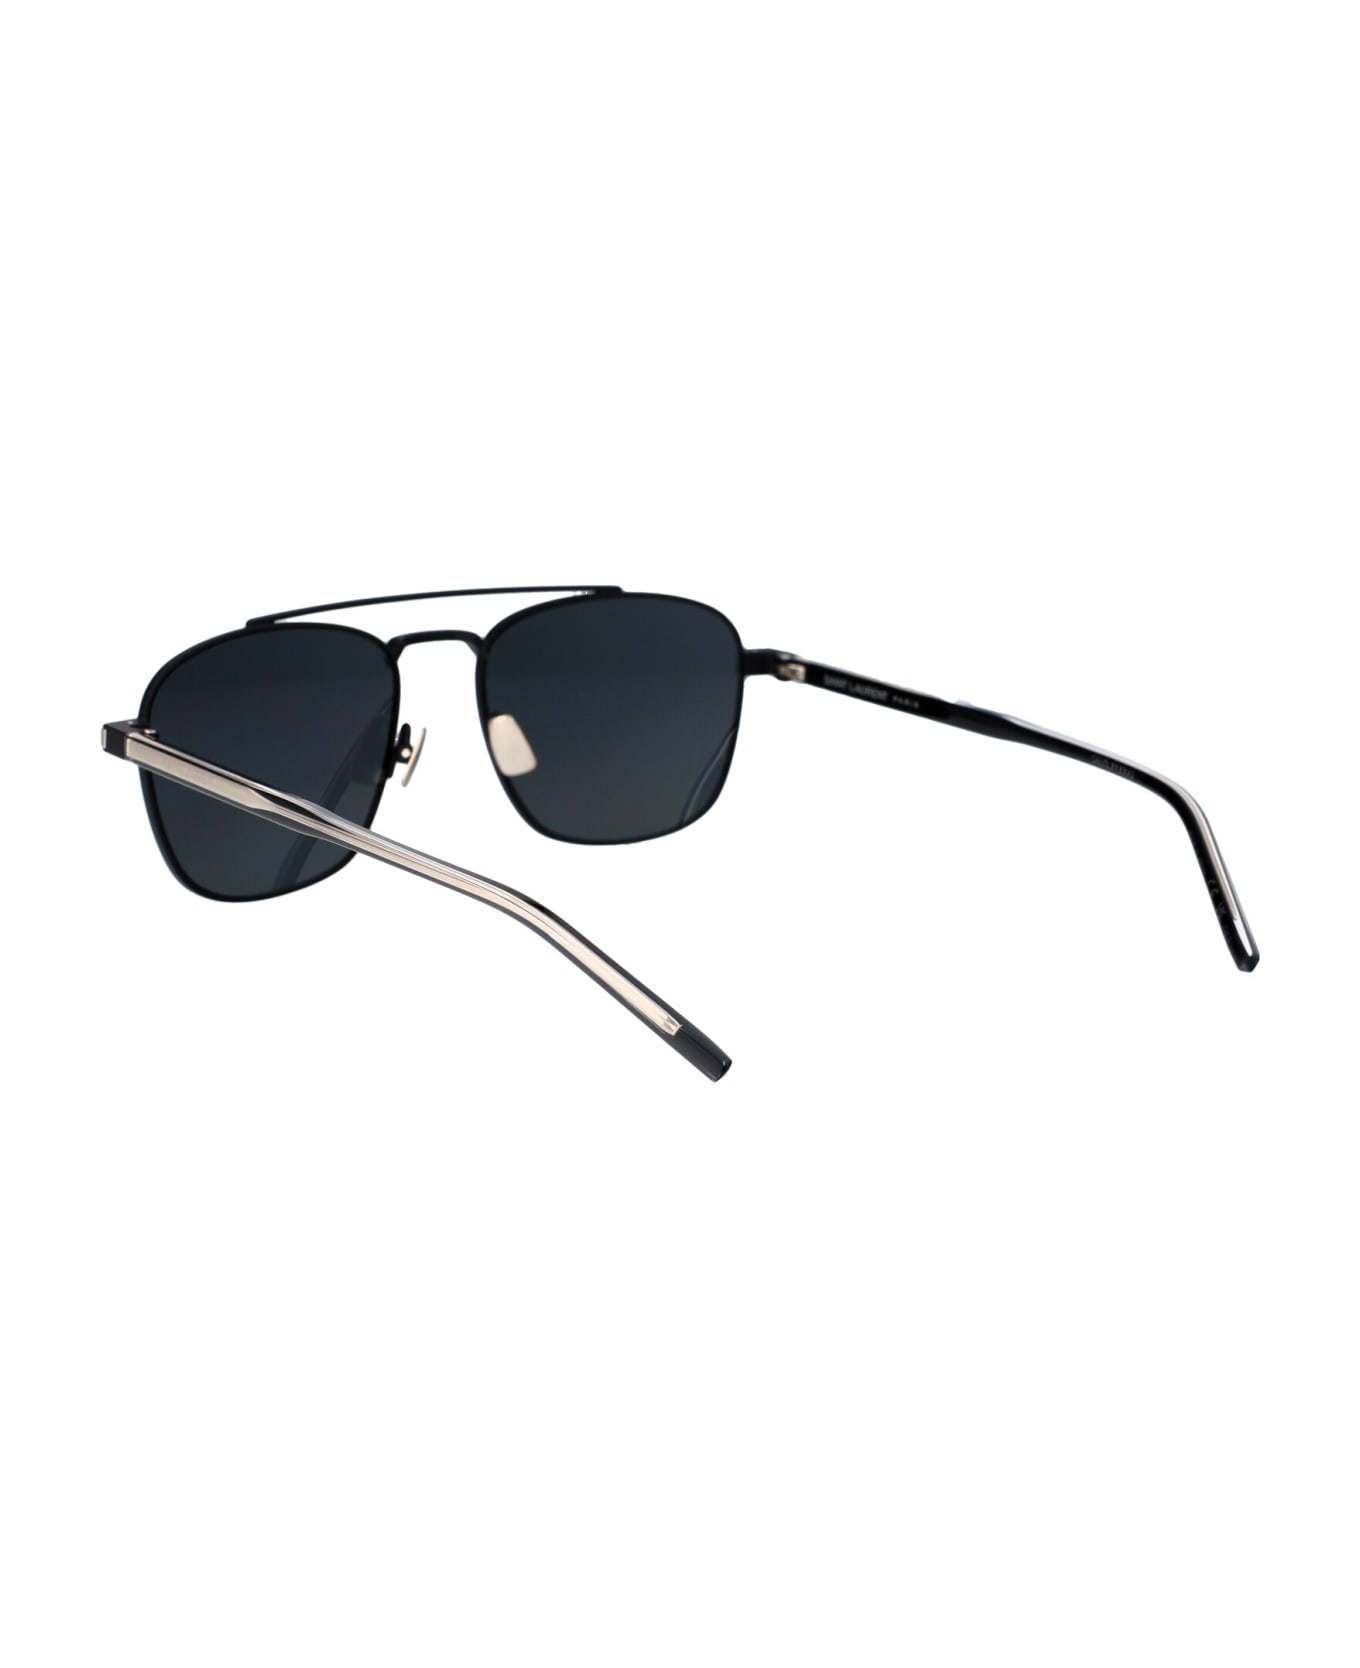 Saint Laurent Eyewear Sl 665 Sunglasses - 001 BLACK CRYSTAL BLACK サングラス